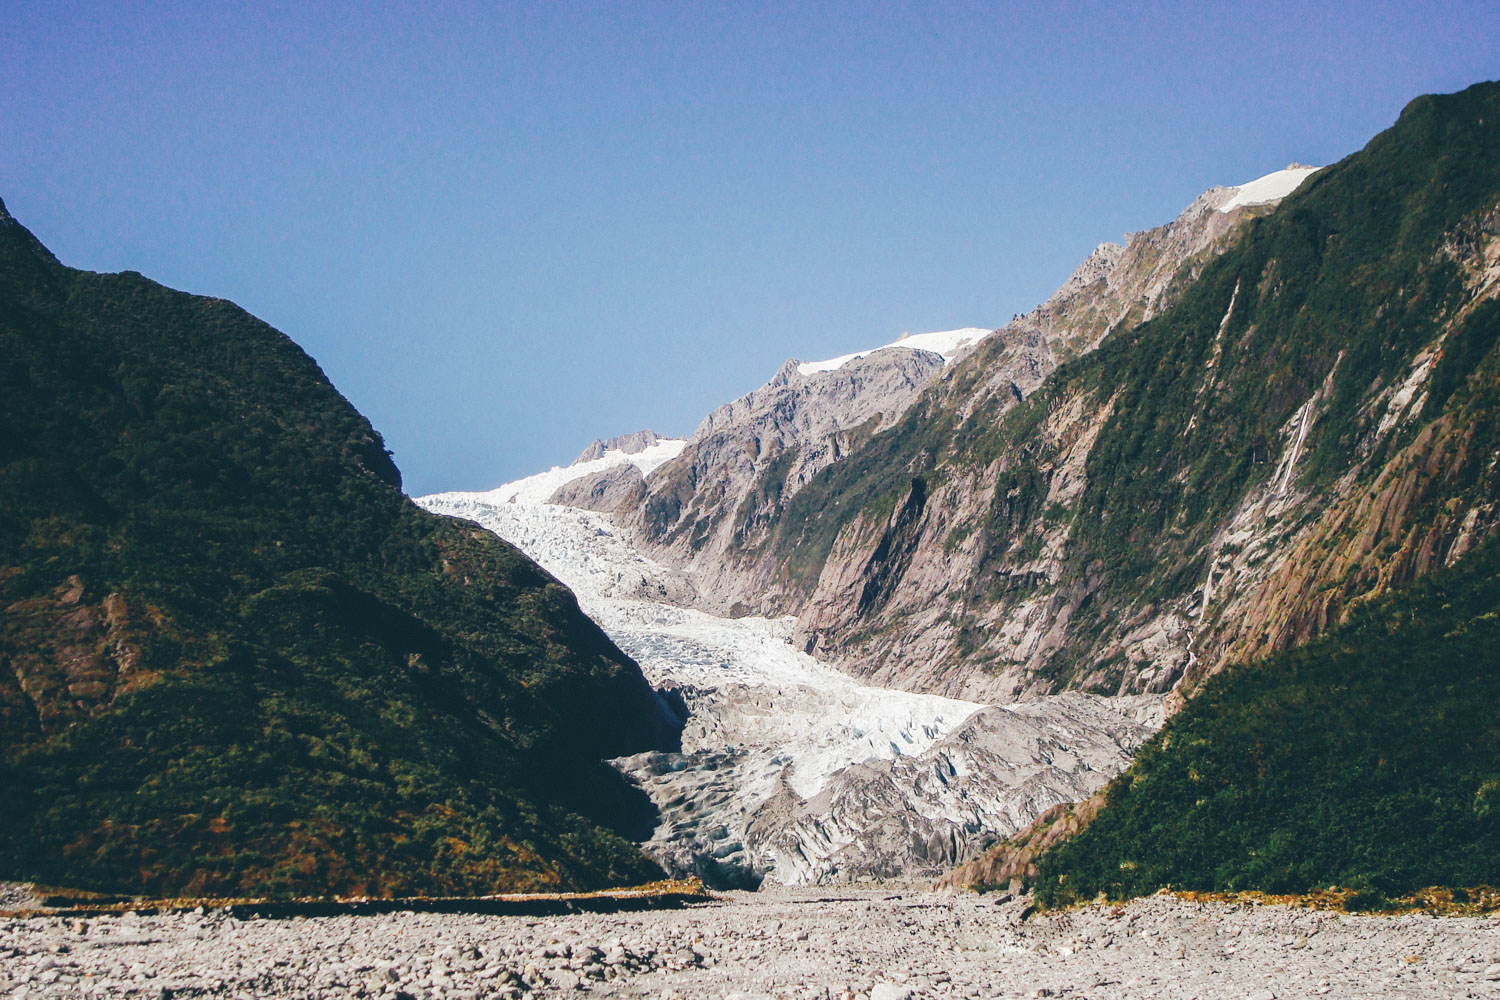  franz josef glacier, new zealand 